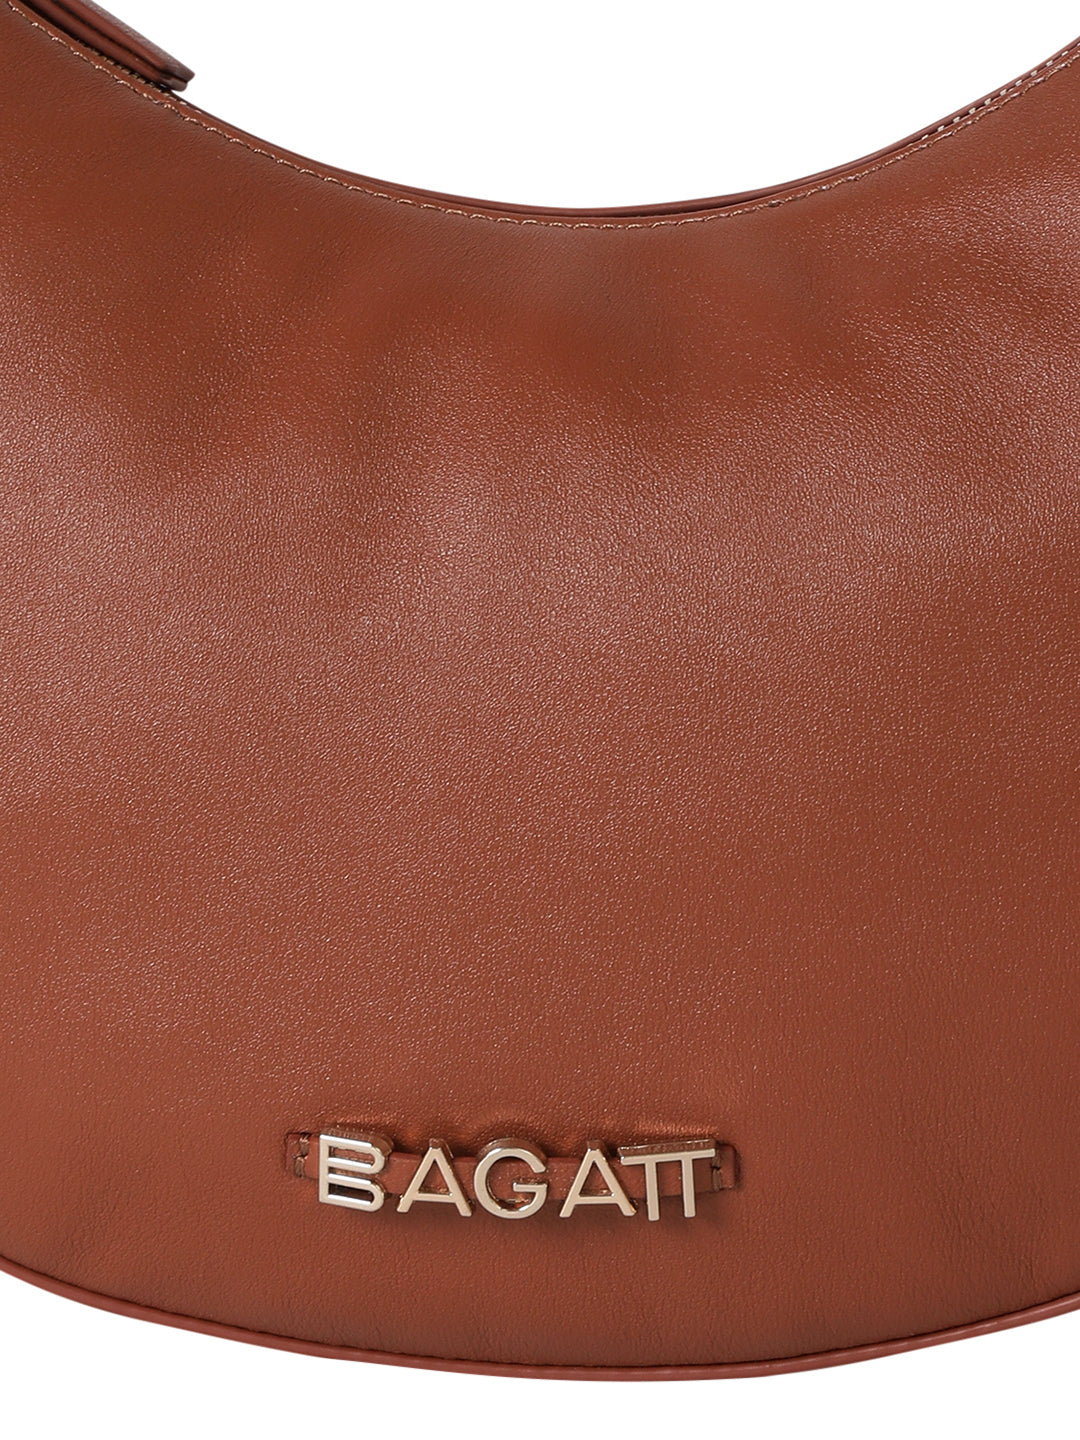 Bretna Brown Leather Weaved Shoulder Bag